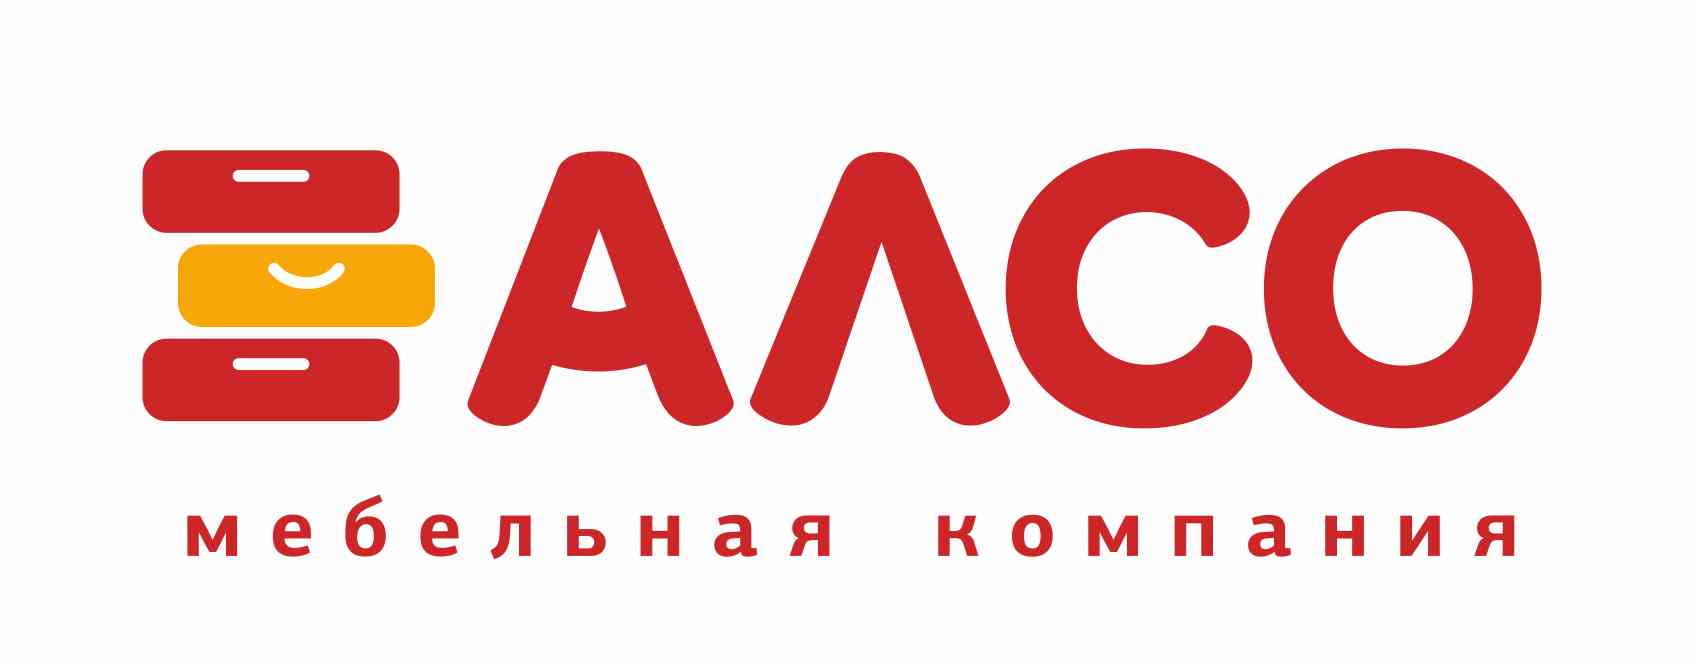 Алсо логотип мебельная компания